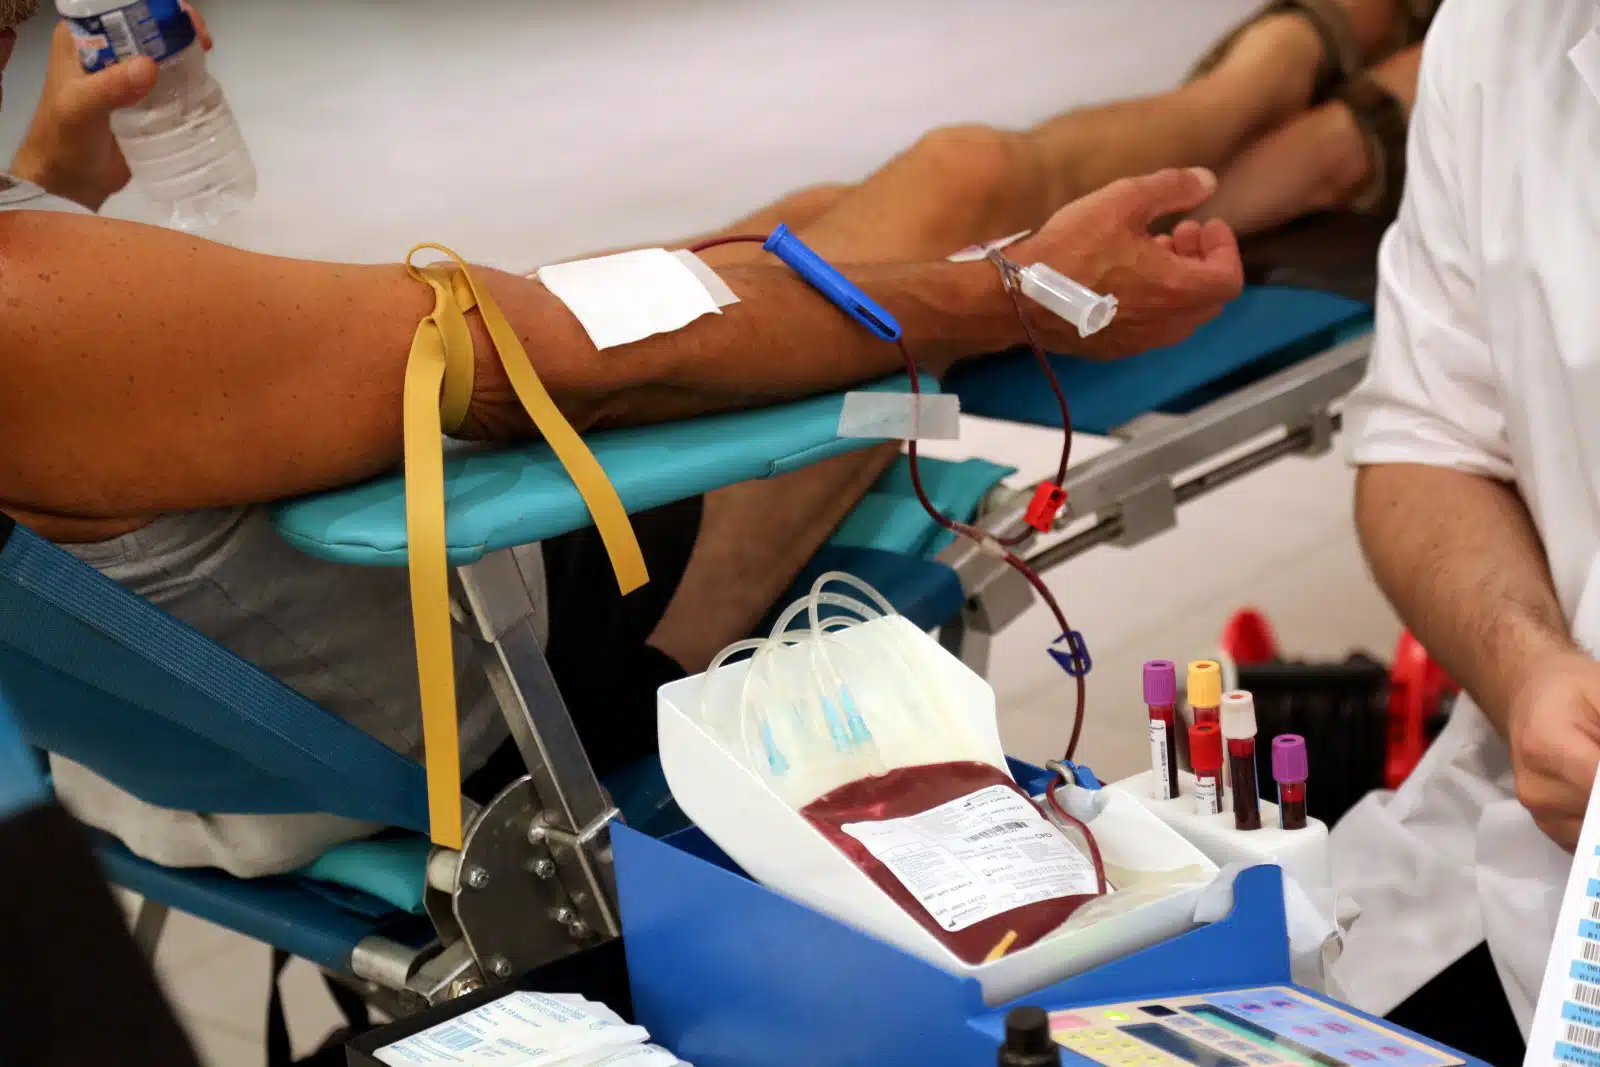 Les États-Unis lèvent l'interdiction de dons de sang pour les homosexuels